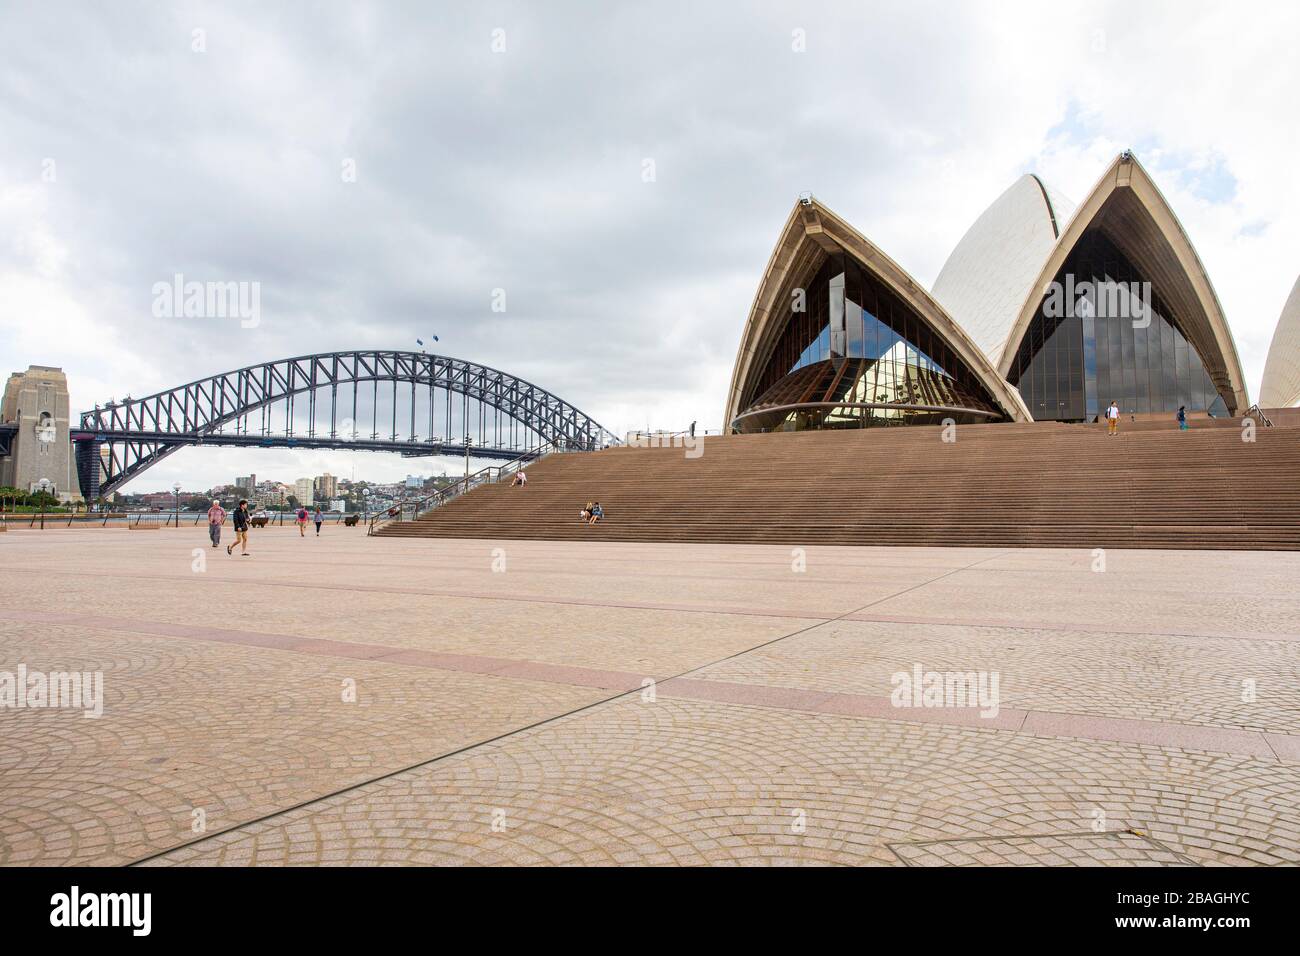 La enfermedad del coronavirus y el riesgo de transmisión mantienen a los turistas y visitantes alejados de la generalmente concurrida Ópera de Sydney, Australia Foto de stock